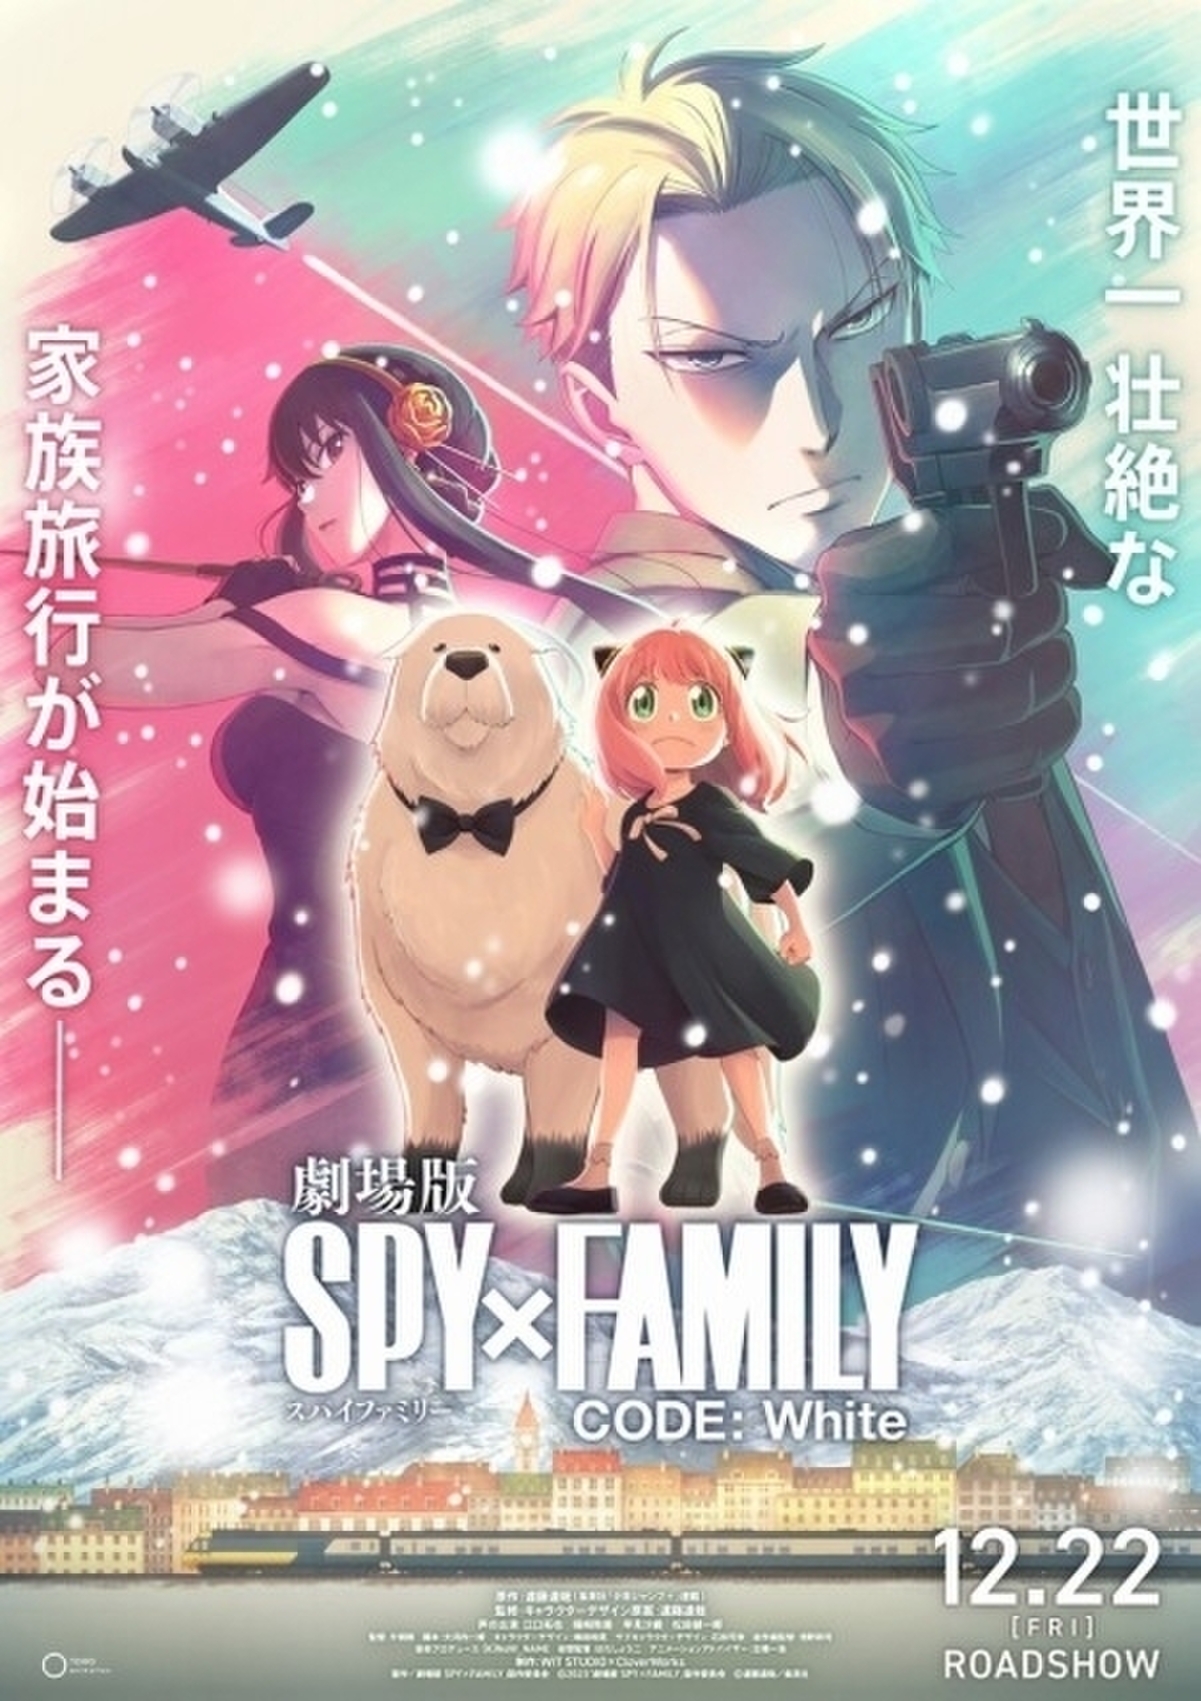 スパイファミリー SPY×FAMILY DVD 1巻 〜 6巻 - アニメ